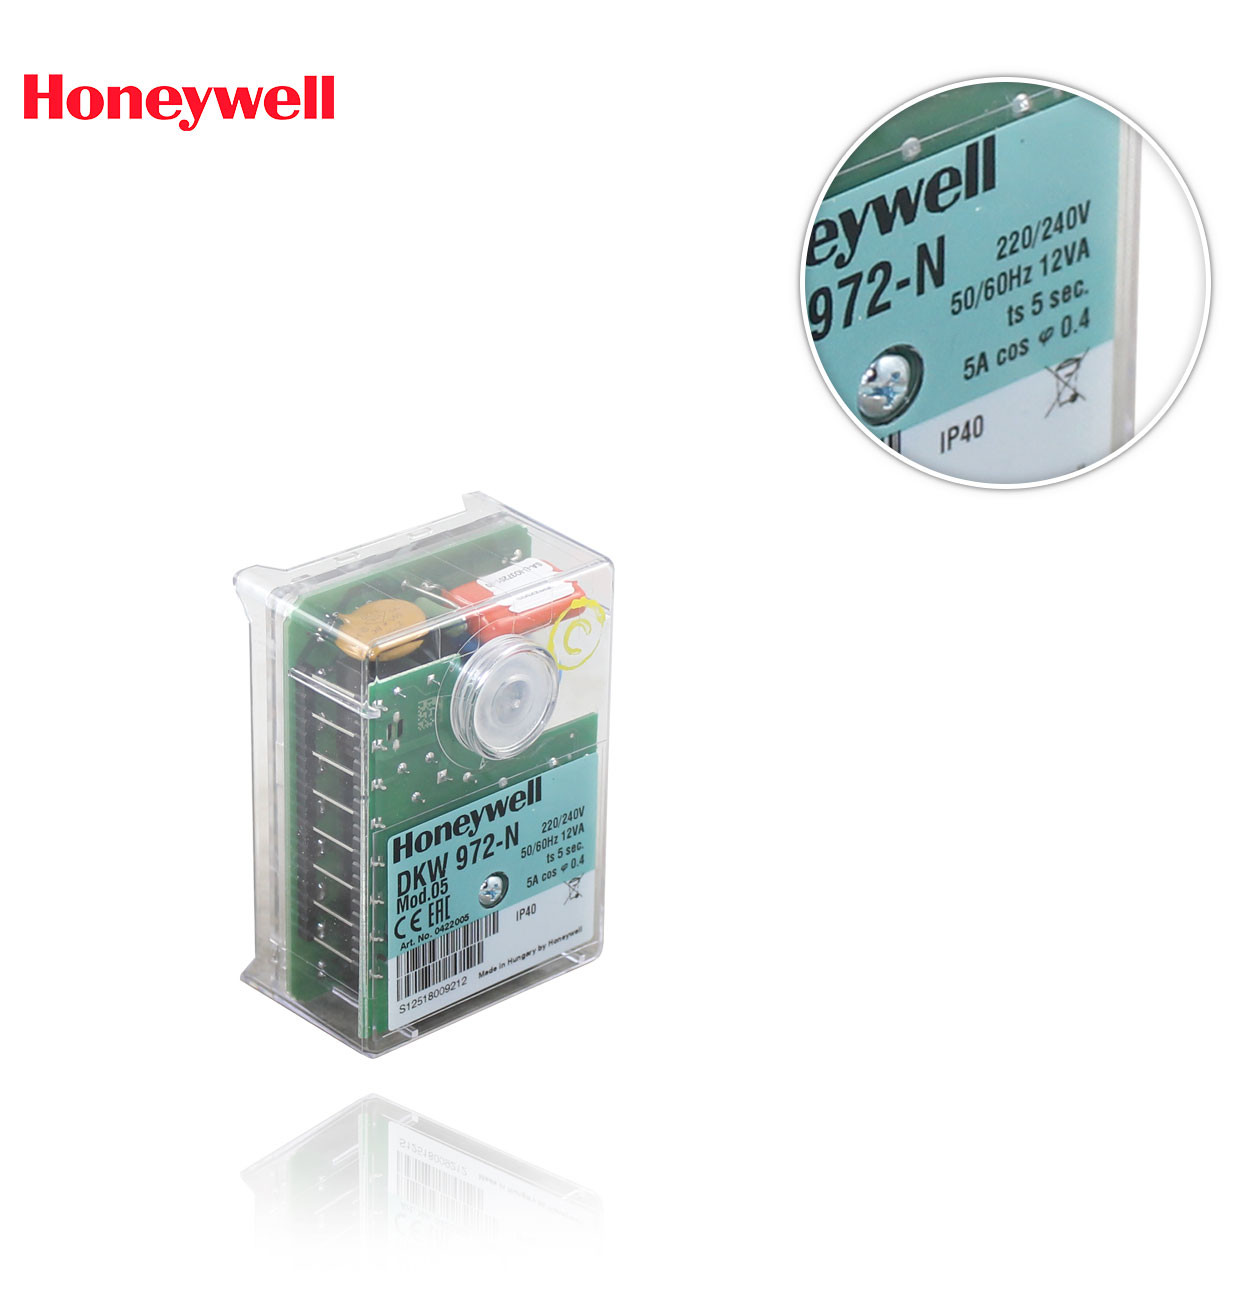 DKW 972-N  (Mod.5) CONTROL BOX HONEYWELL